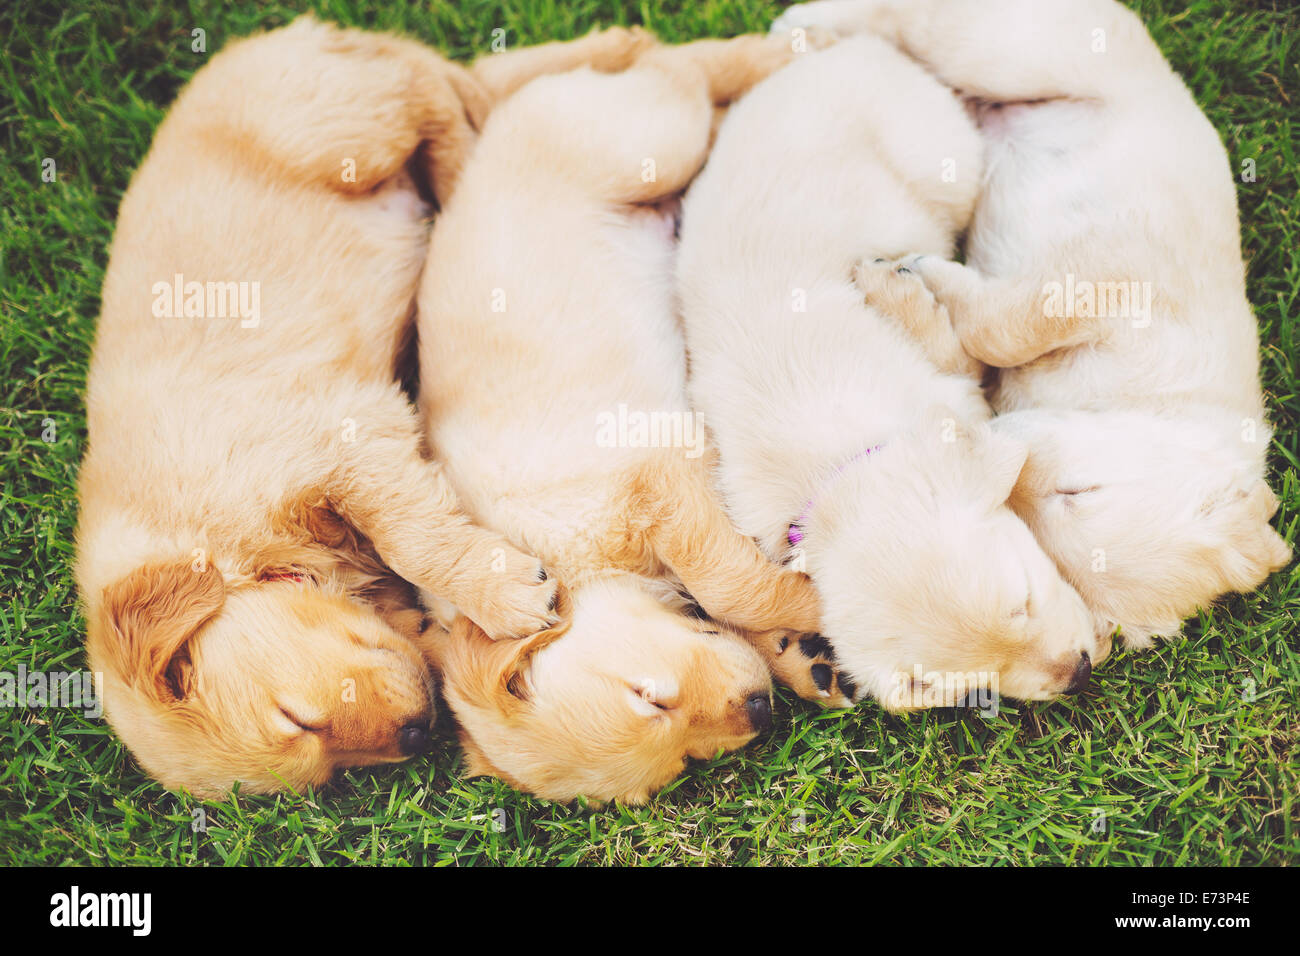 Grupo de Adorables cachorros de golden retriever durmiendo en el patio Foto de stock